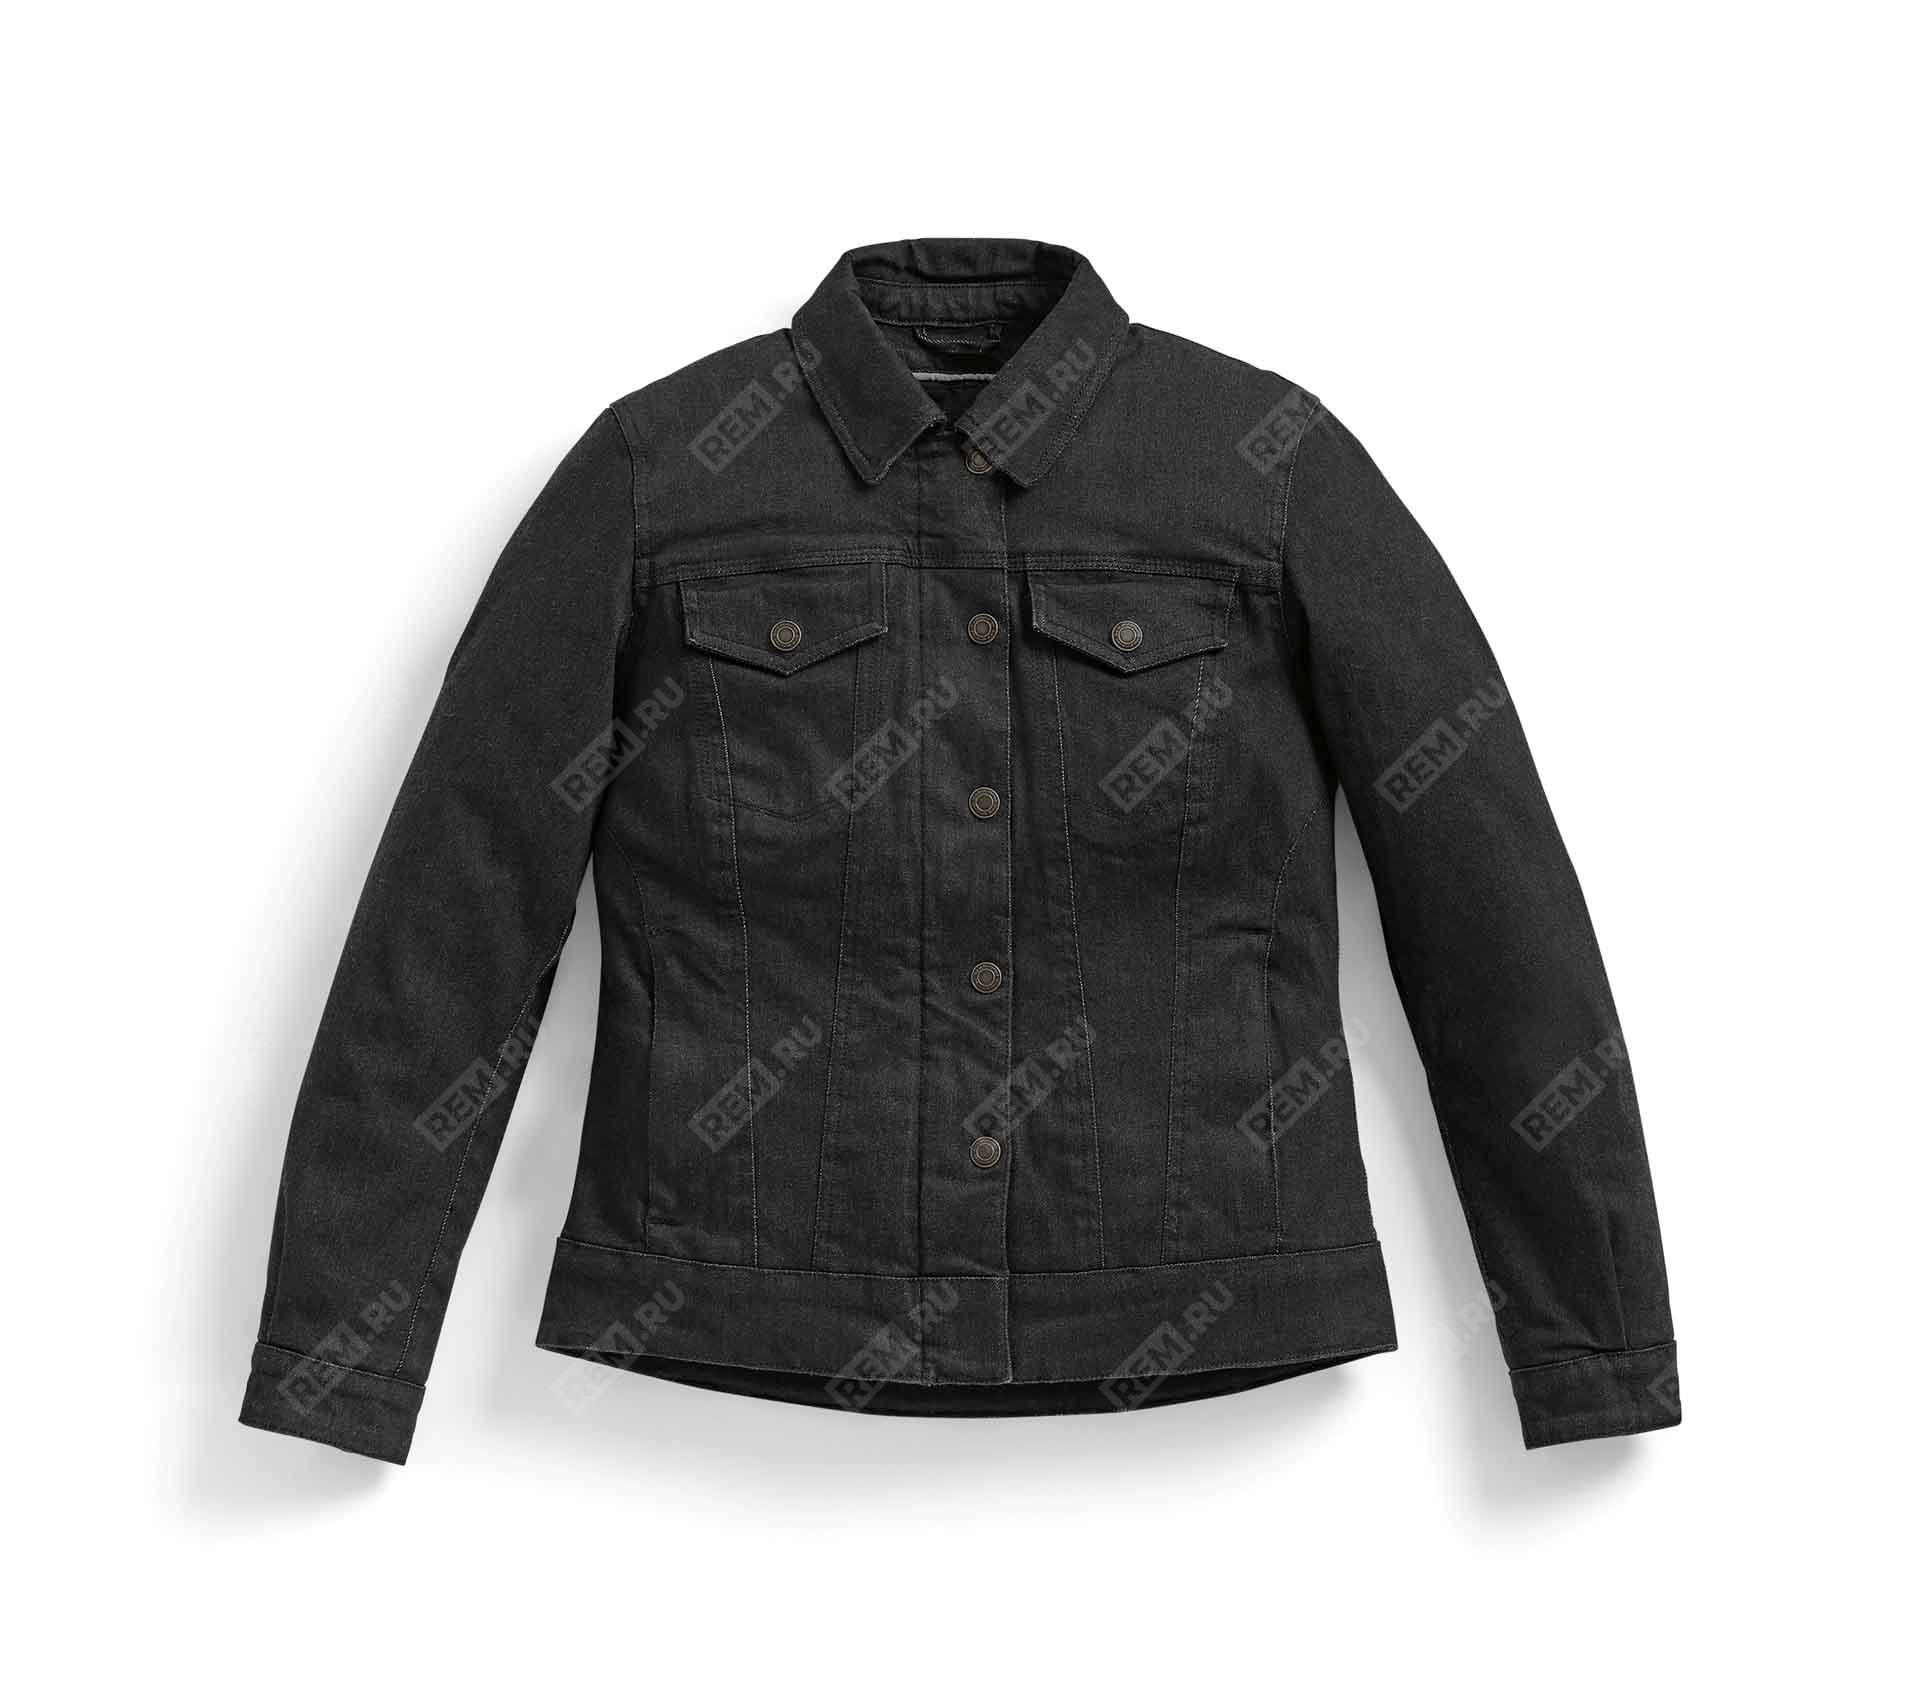  76131539847  куртка женская джинсовая roadcrafted черная, размер l   (фото 1)